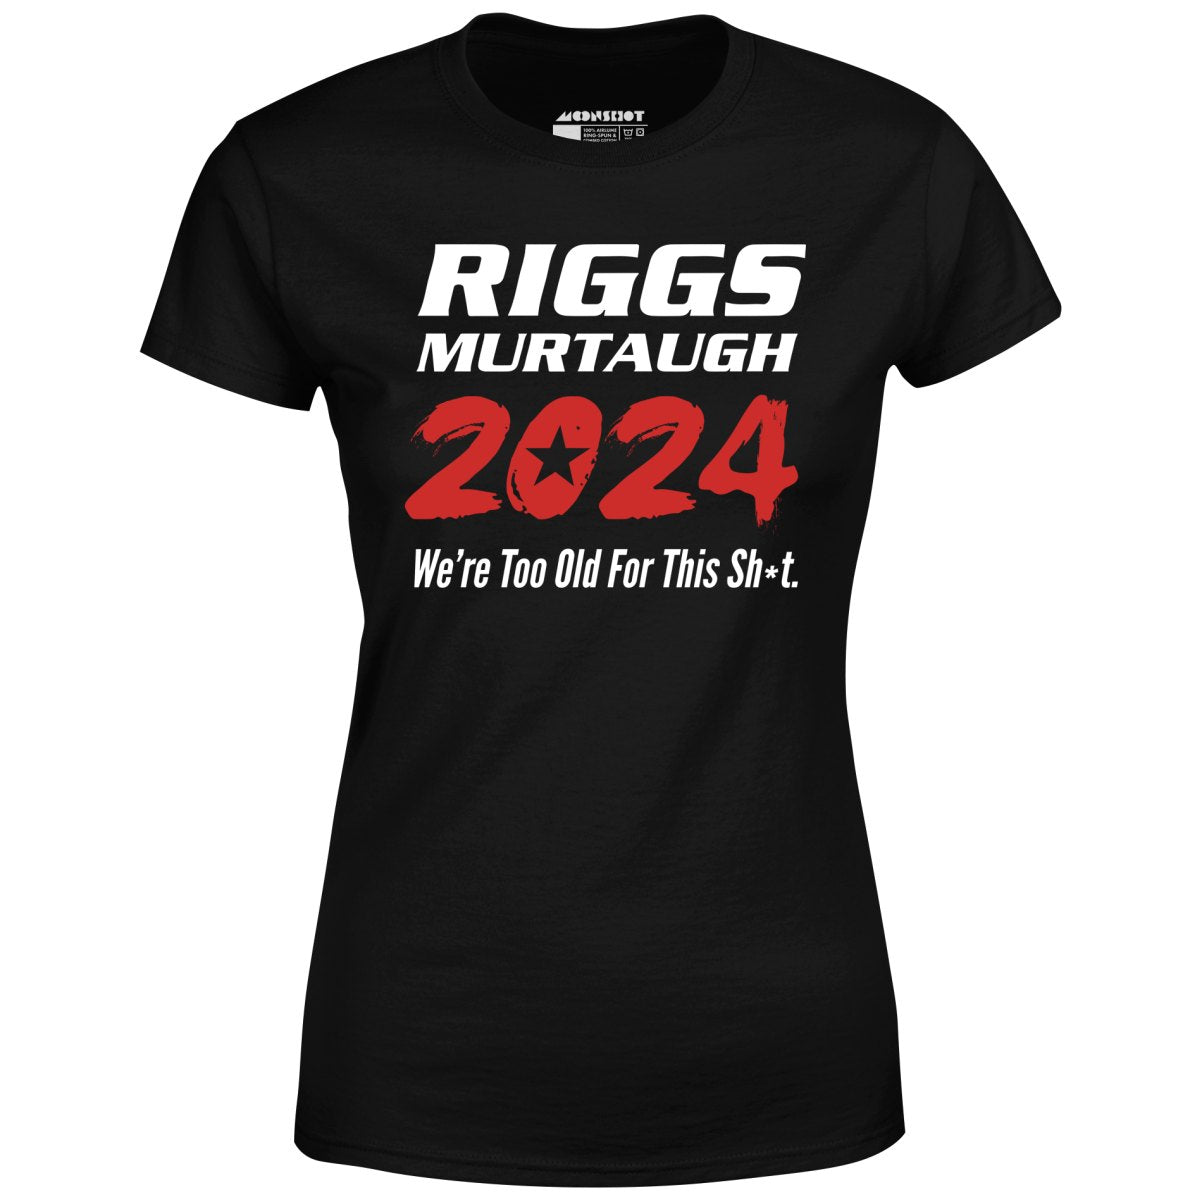 Riggs Murtaugh 2024 - Women's T-Shirt